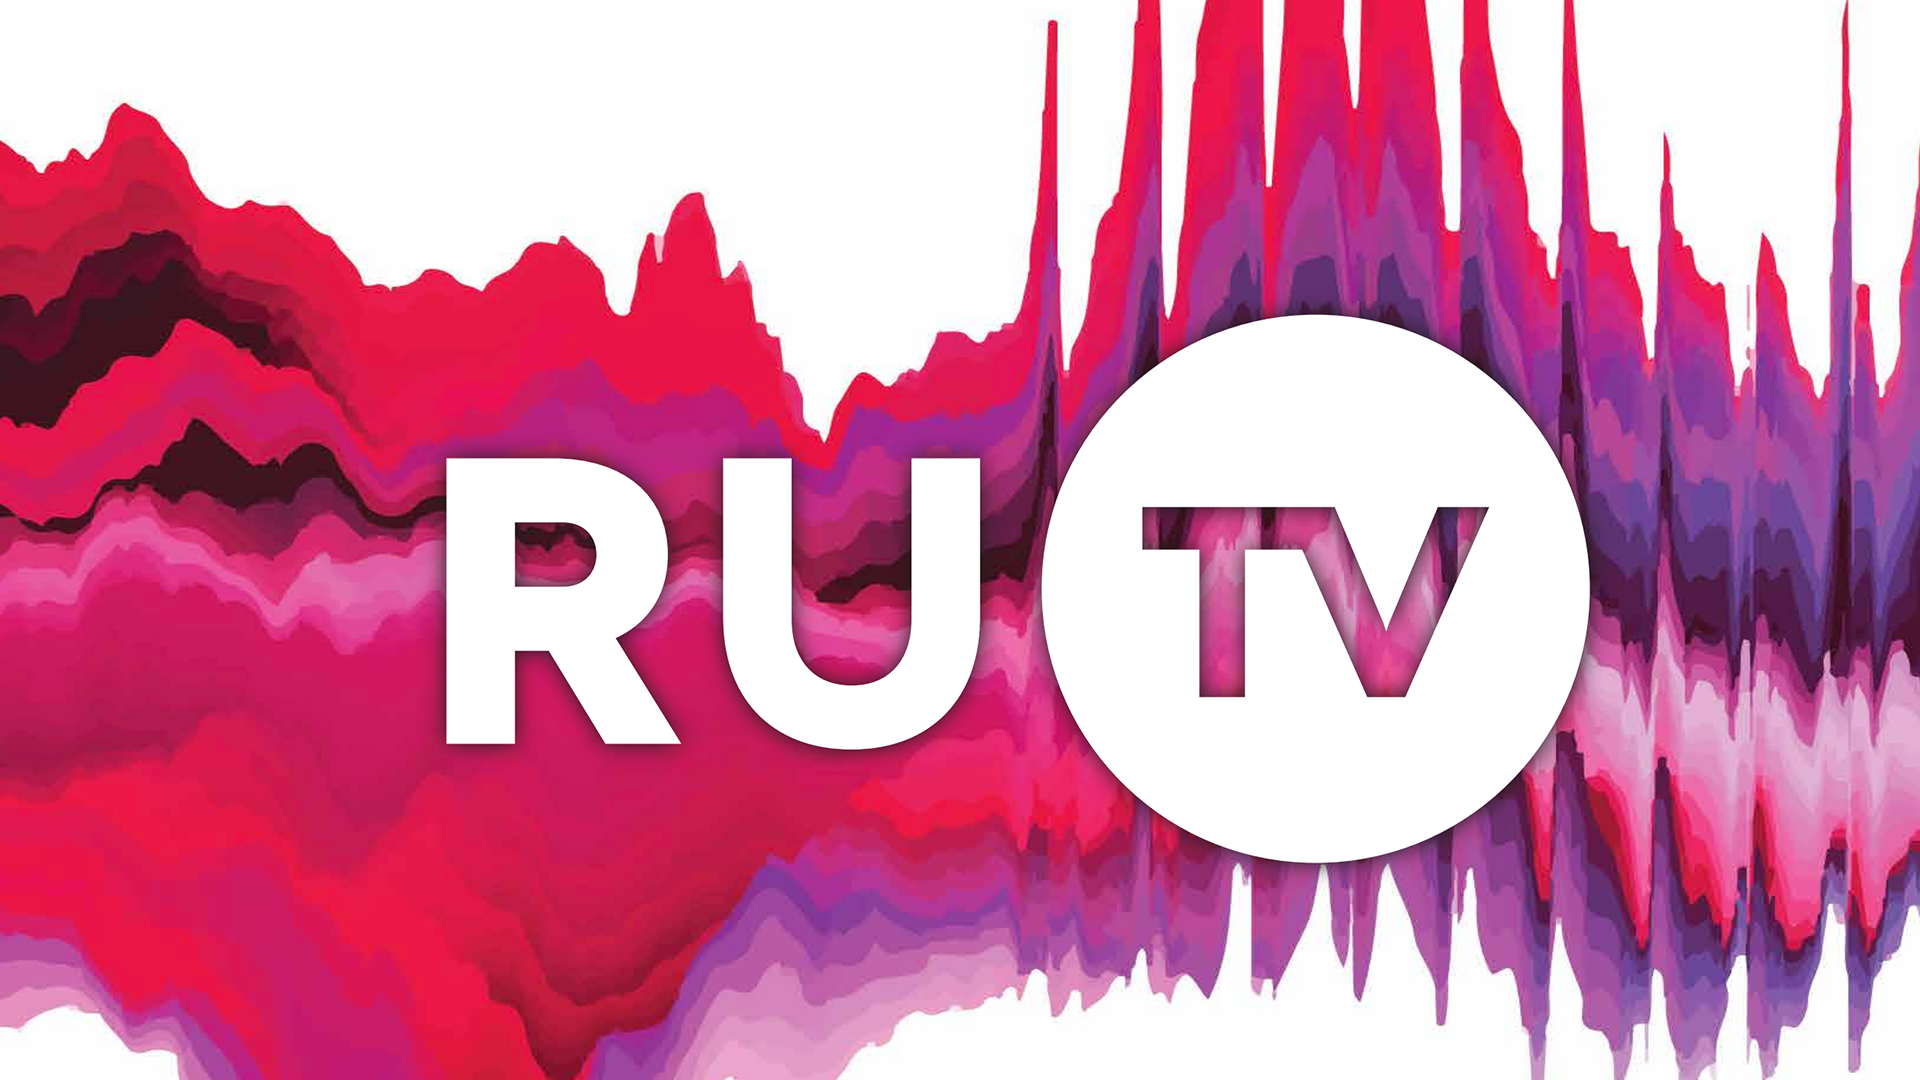 Ru.TV